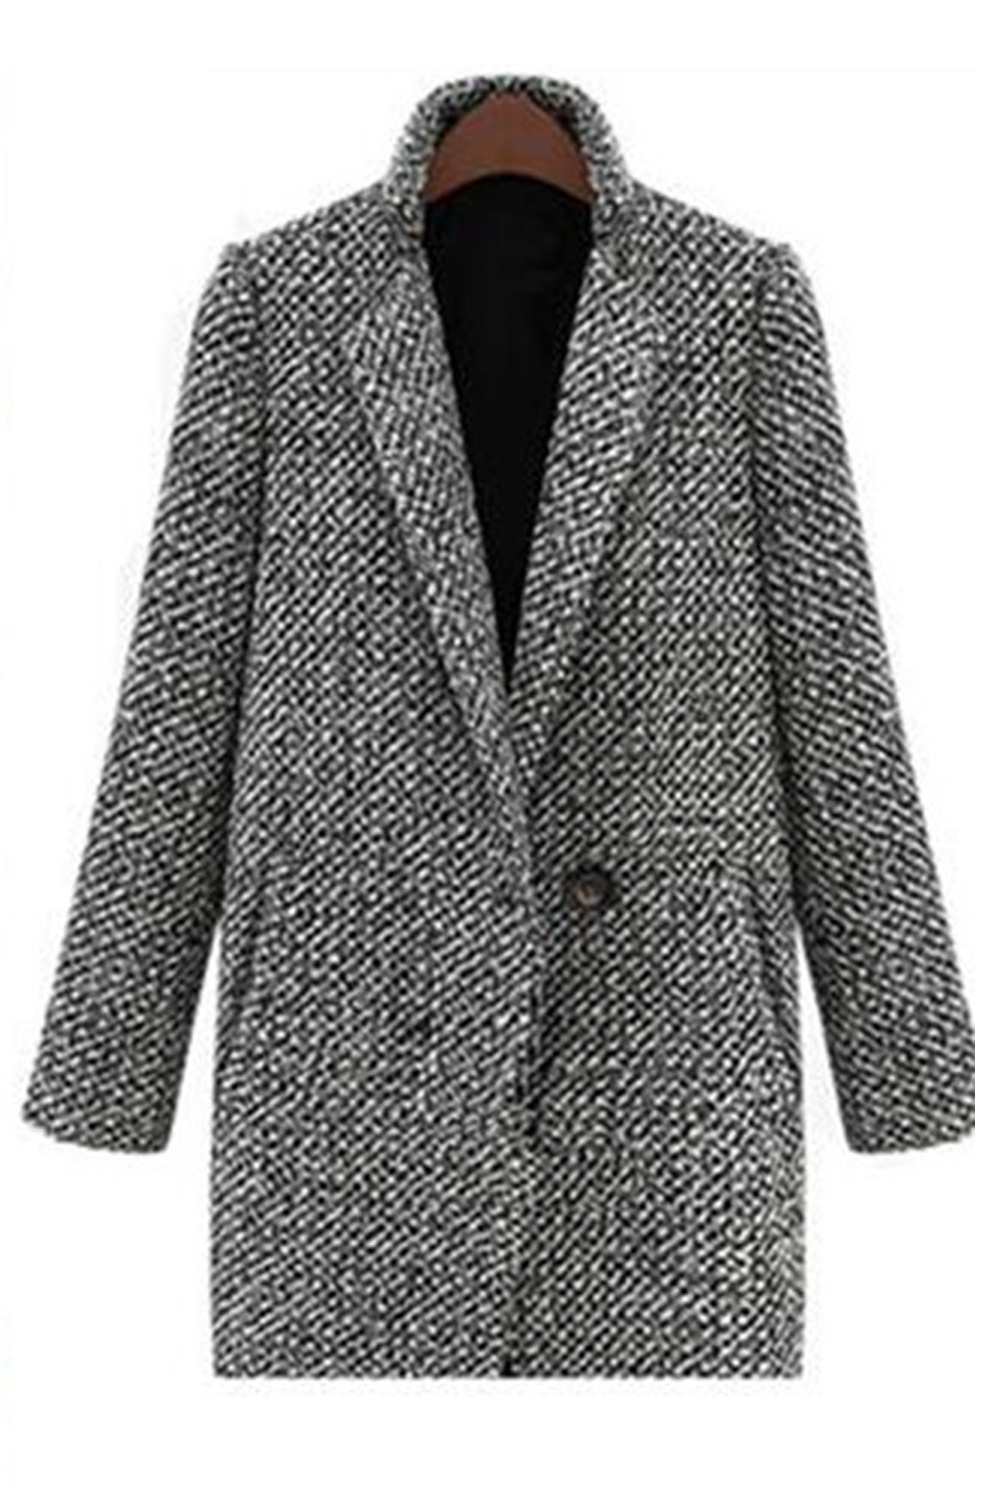 zara women's grey wool coat